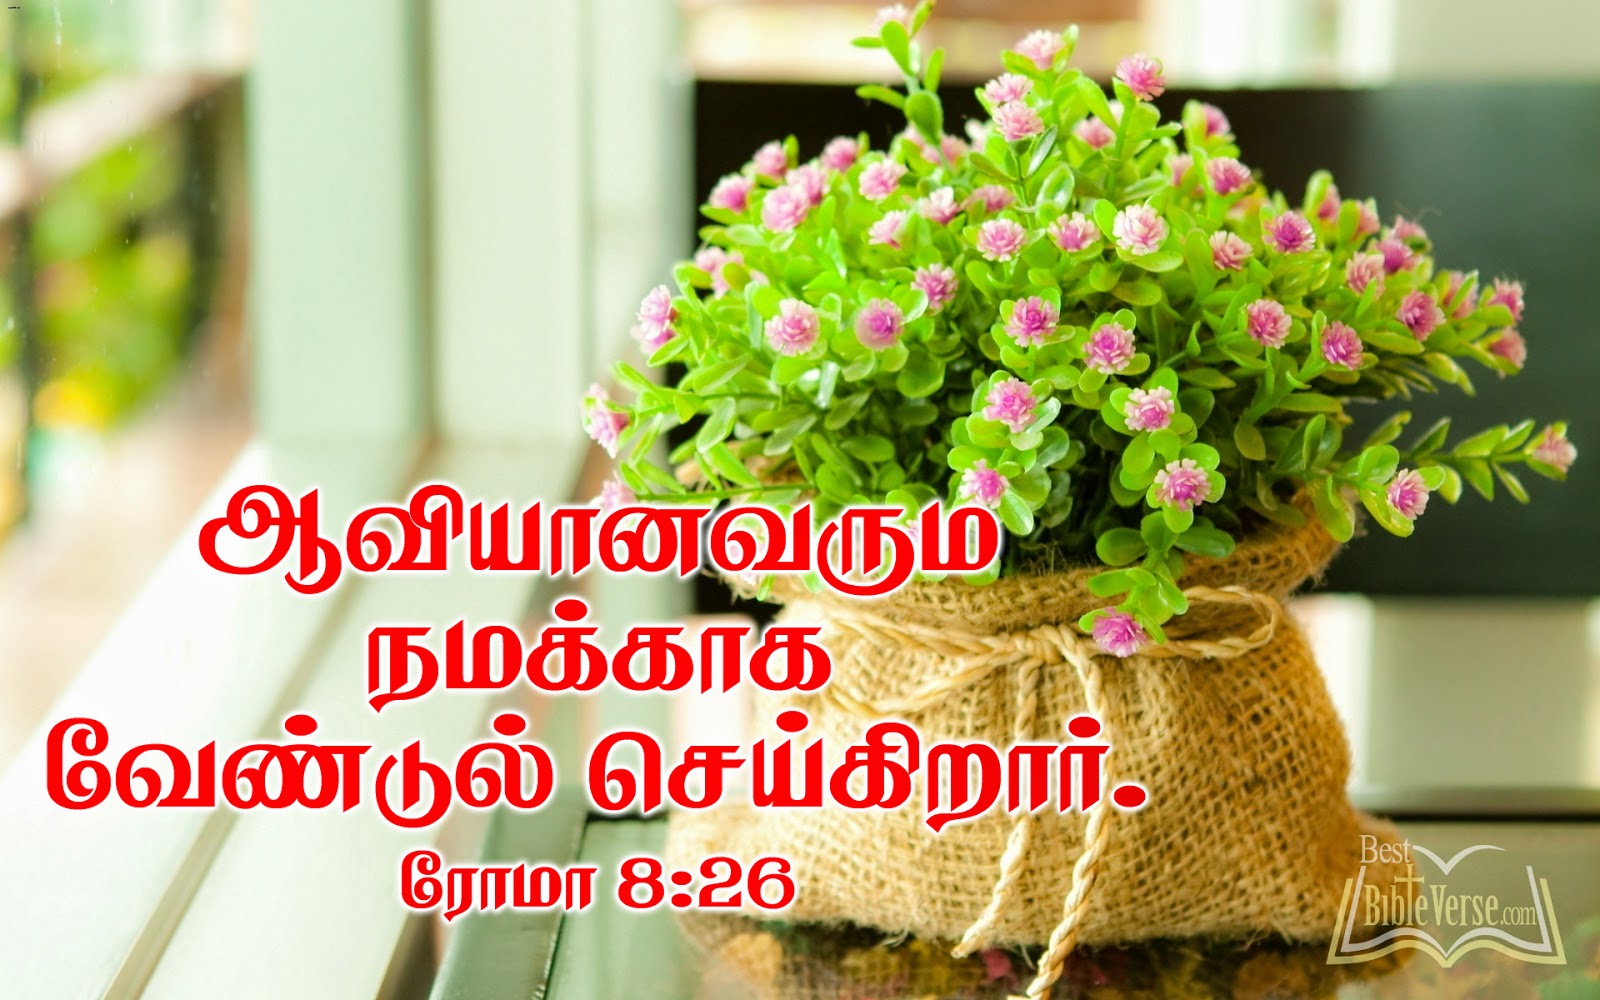 kannada biblia palabras fondo de pantalla,maceta,flor,planta,ramo de flores,planta de casa